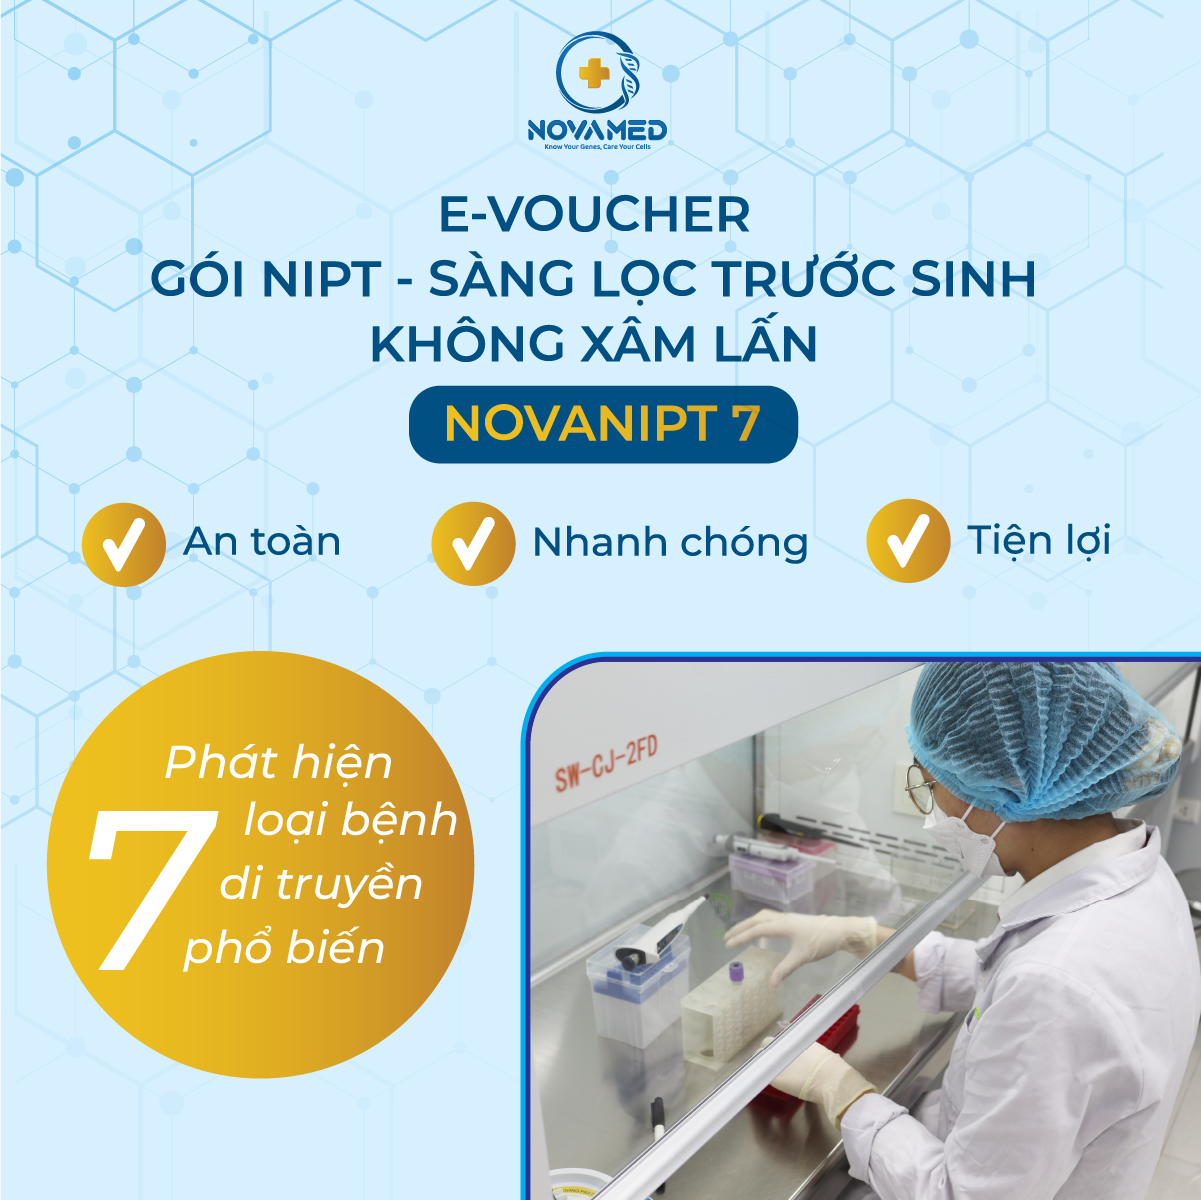 Gói NIPT - Sàng lọc trước sinh không xâm lấn - NovaNIPT 7 